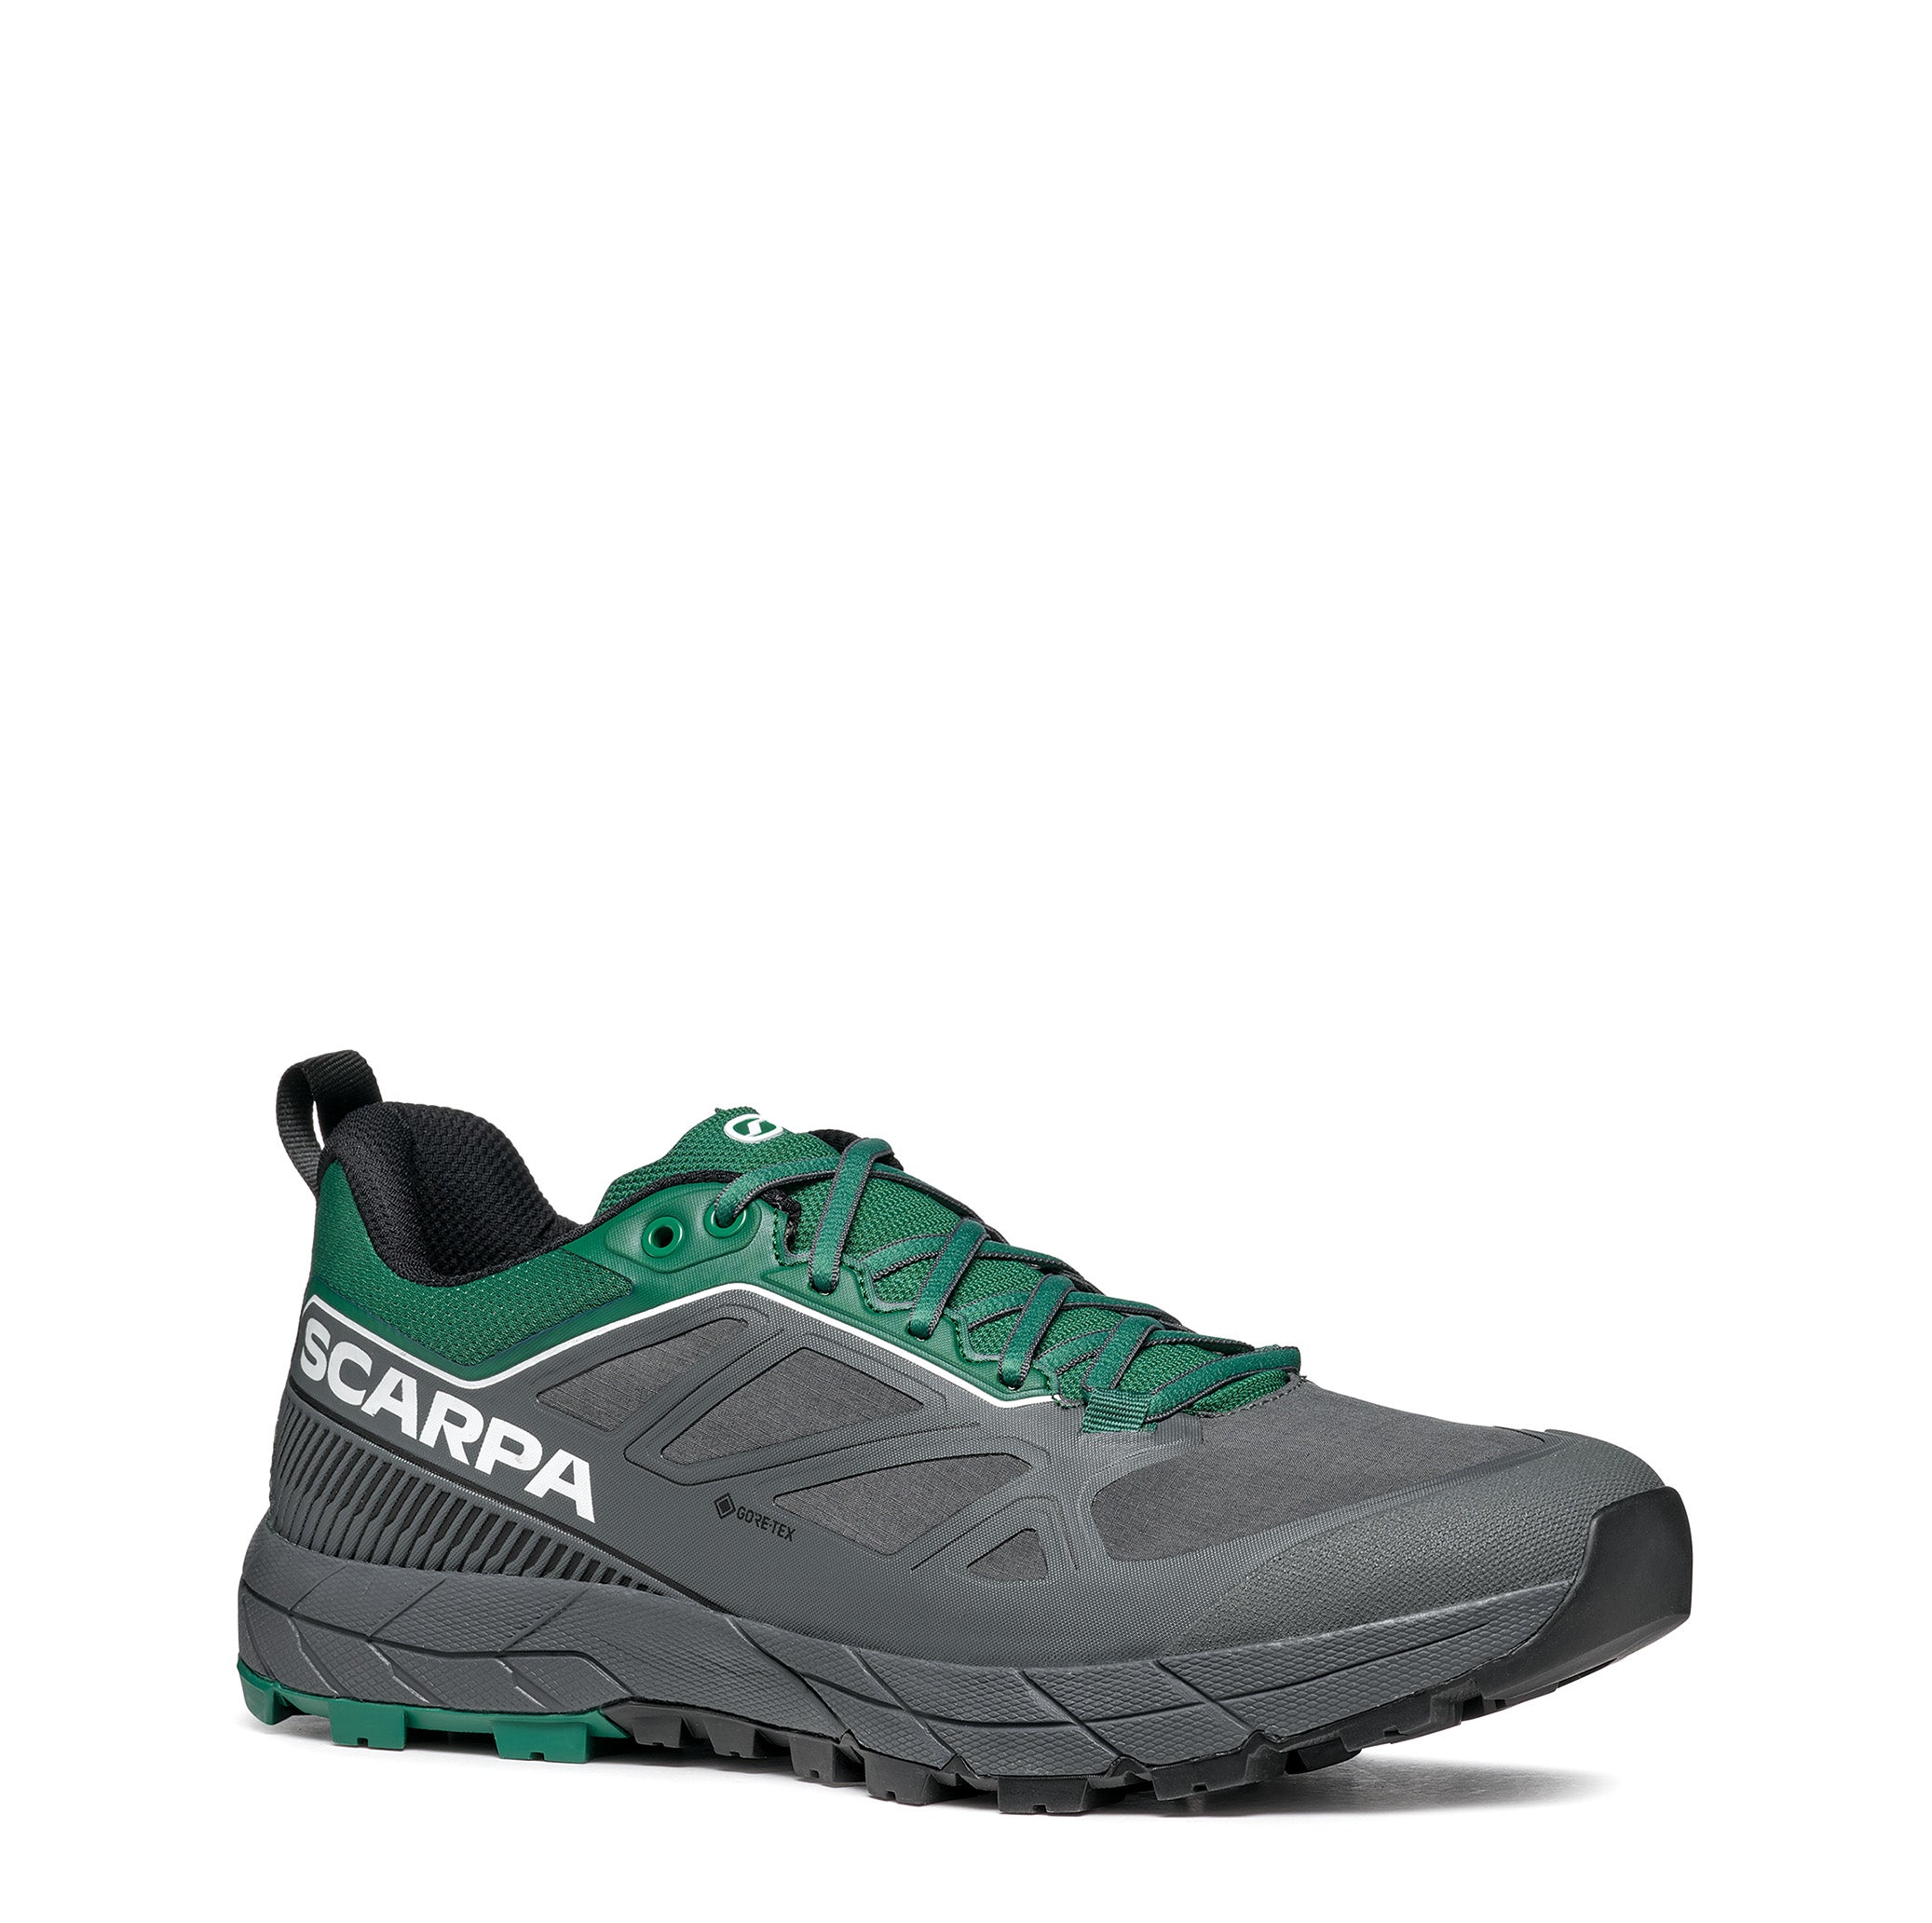 Scarpa RAPID GTX Anthracite Alpine Green trail running shoe